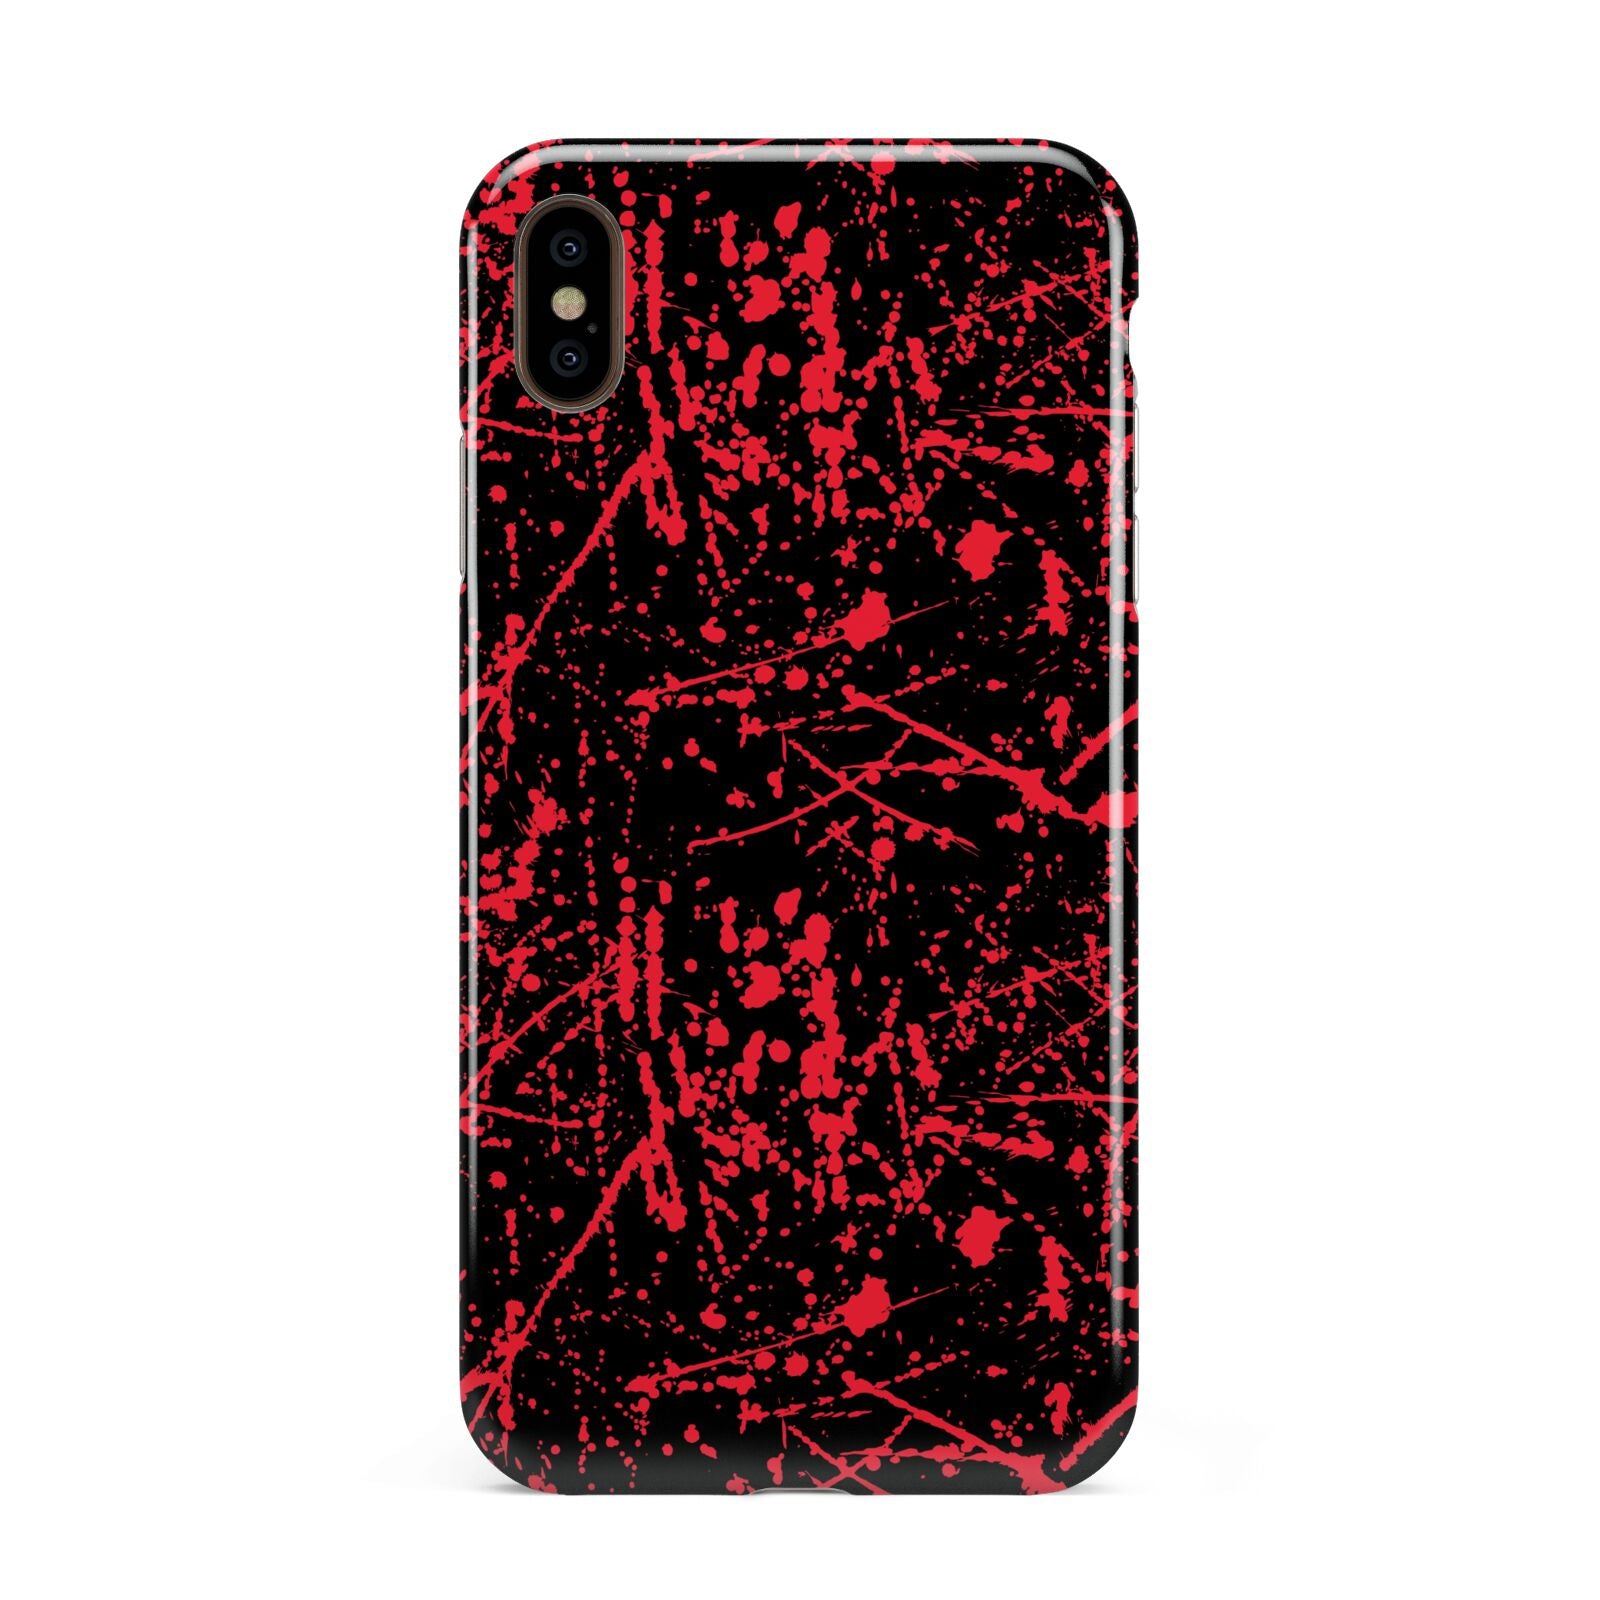 Blood Splatters Apple iPhone Xs Max 3D Tough Case